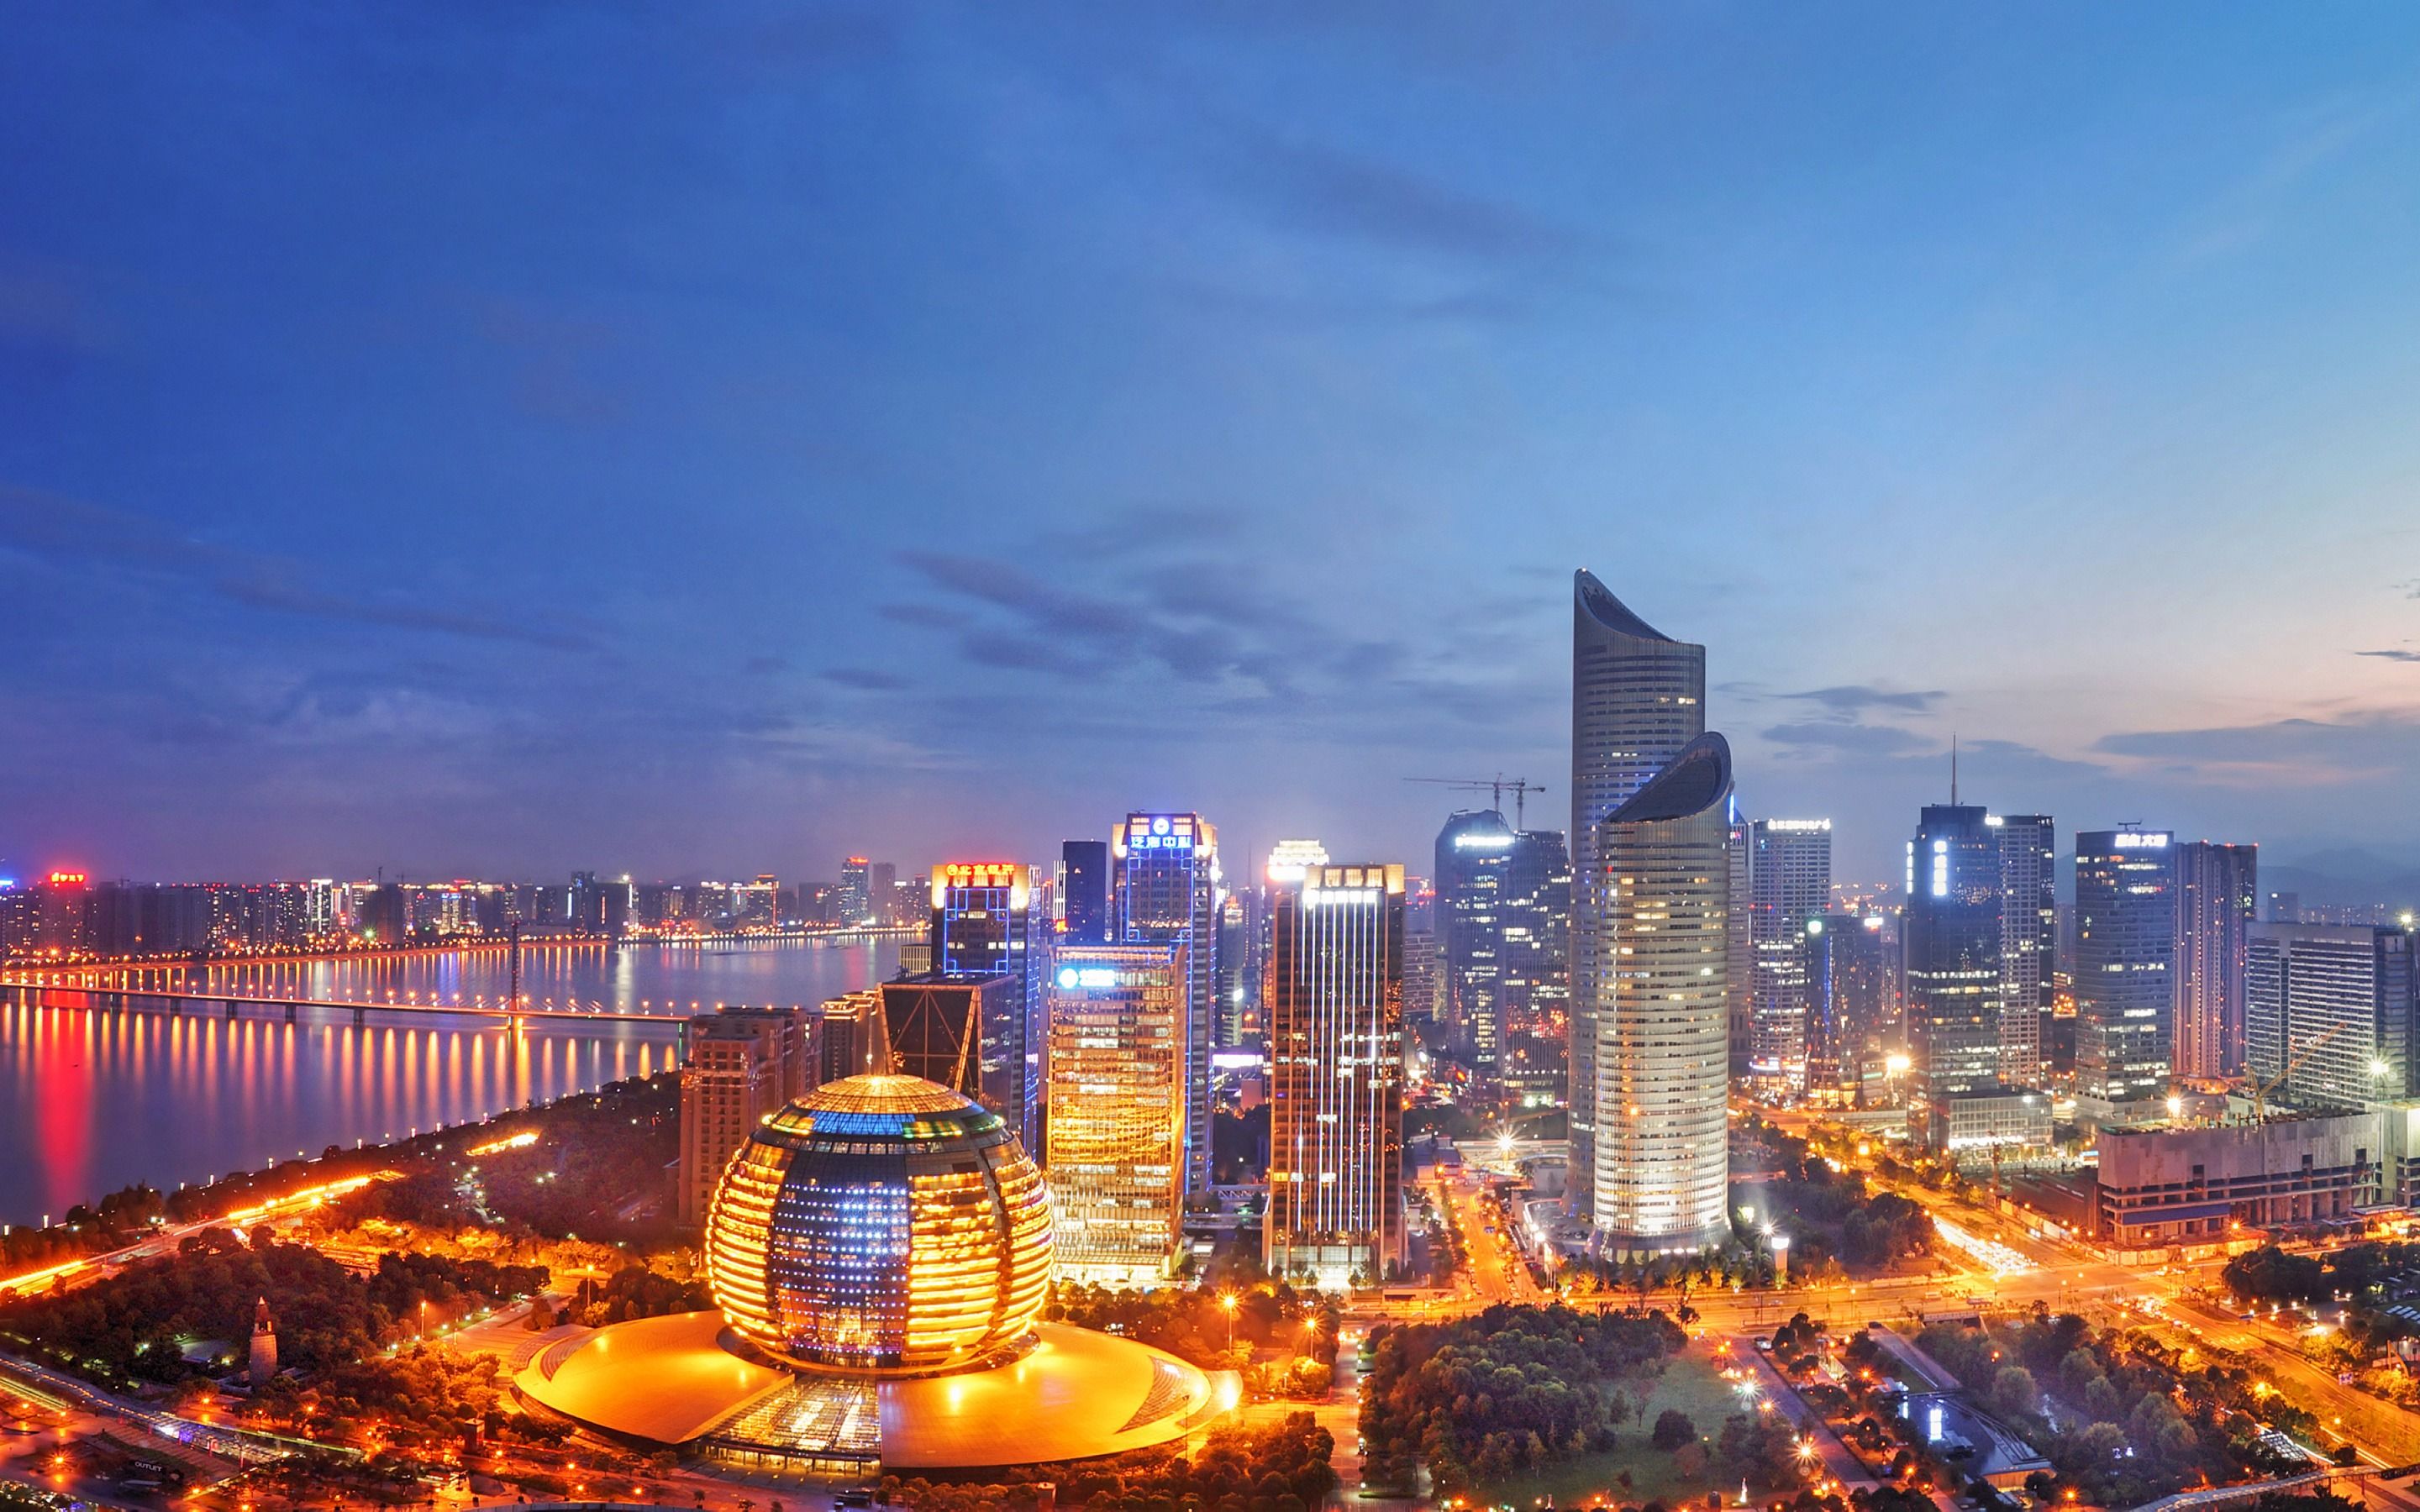 Download wallpaper Hangzhou, nightscapes, asian cities, Zhejiang